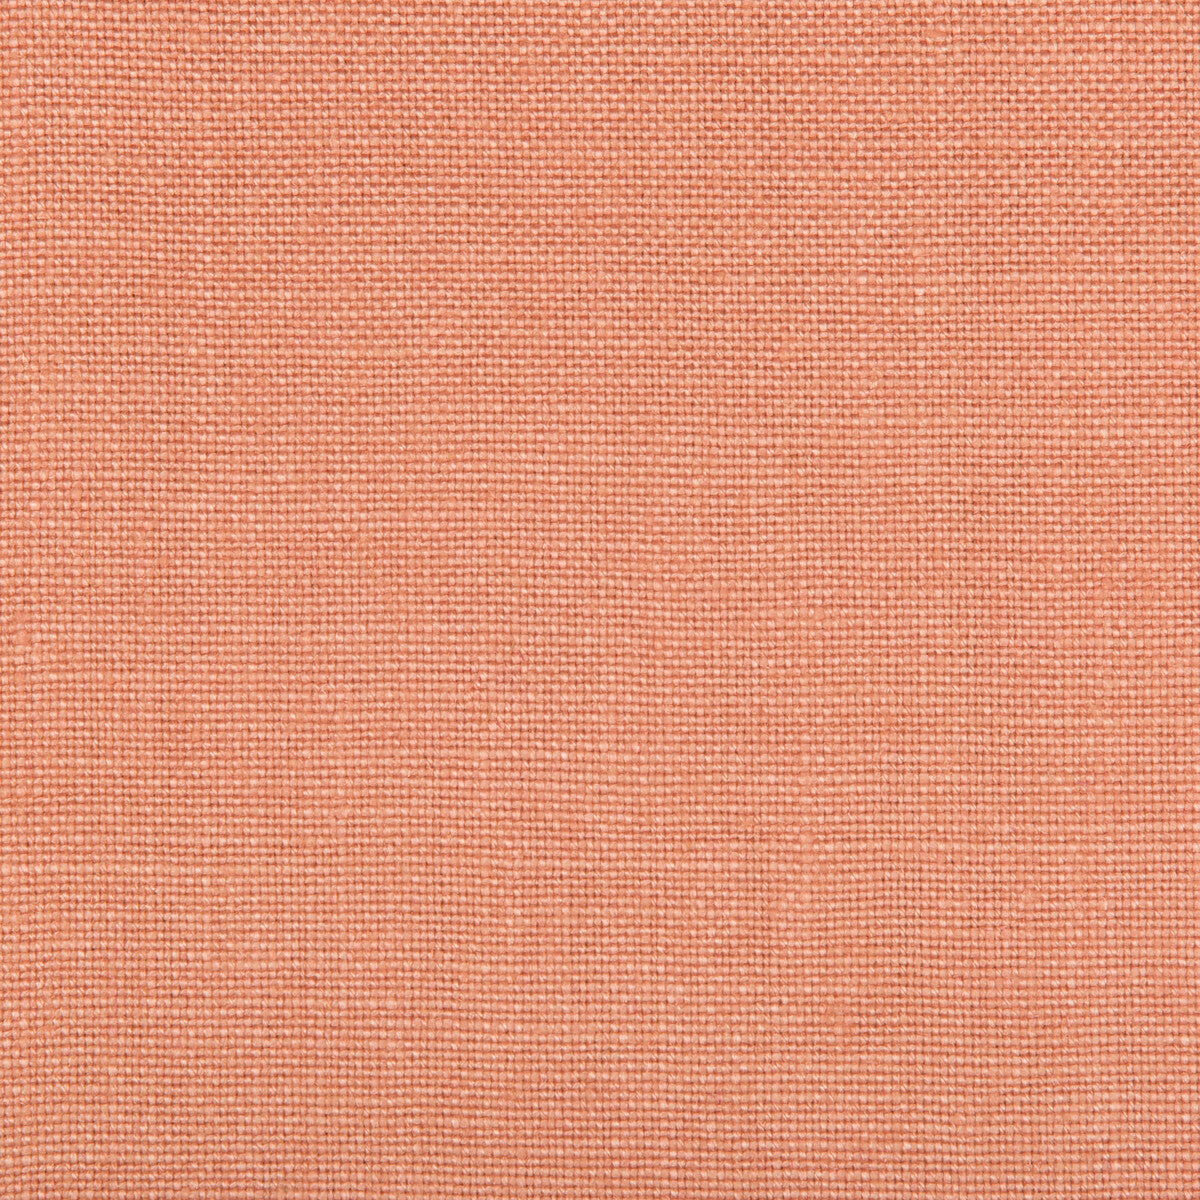 Kravet Basics fabric in 35342-7 color - pattern 35342.7.0 - by Kravet Basics